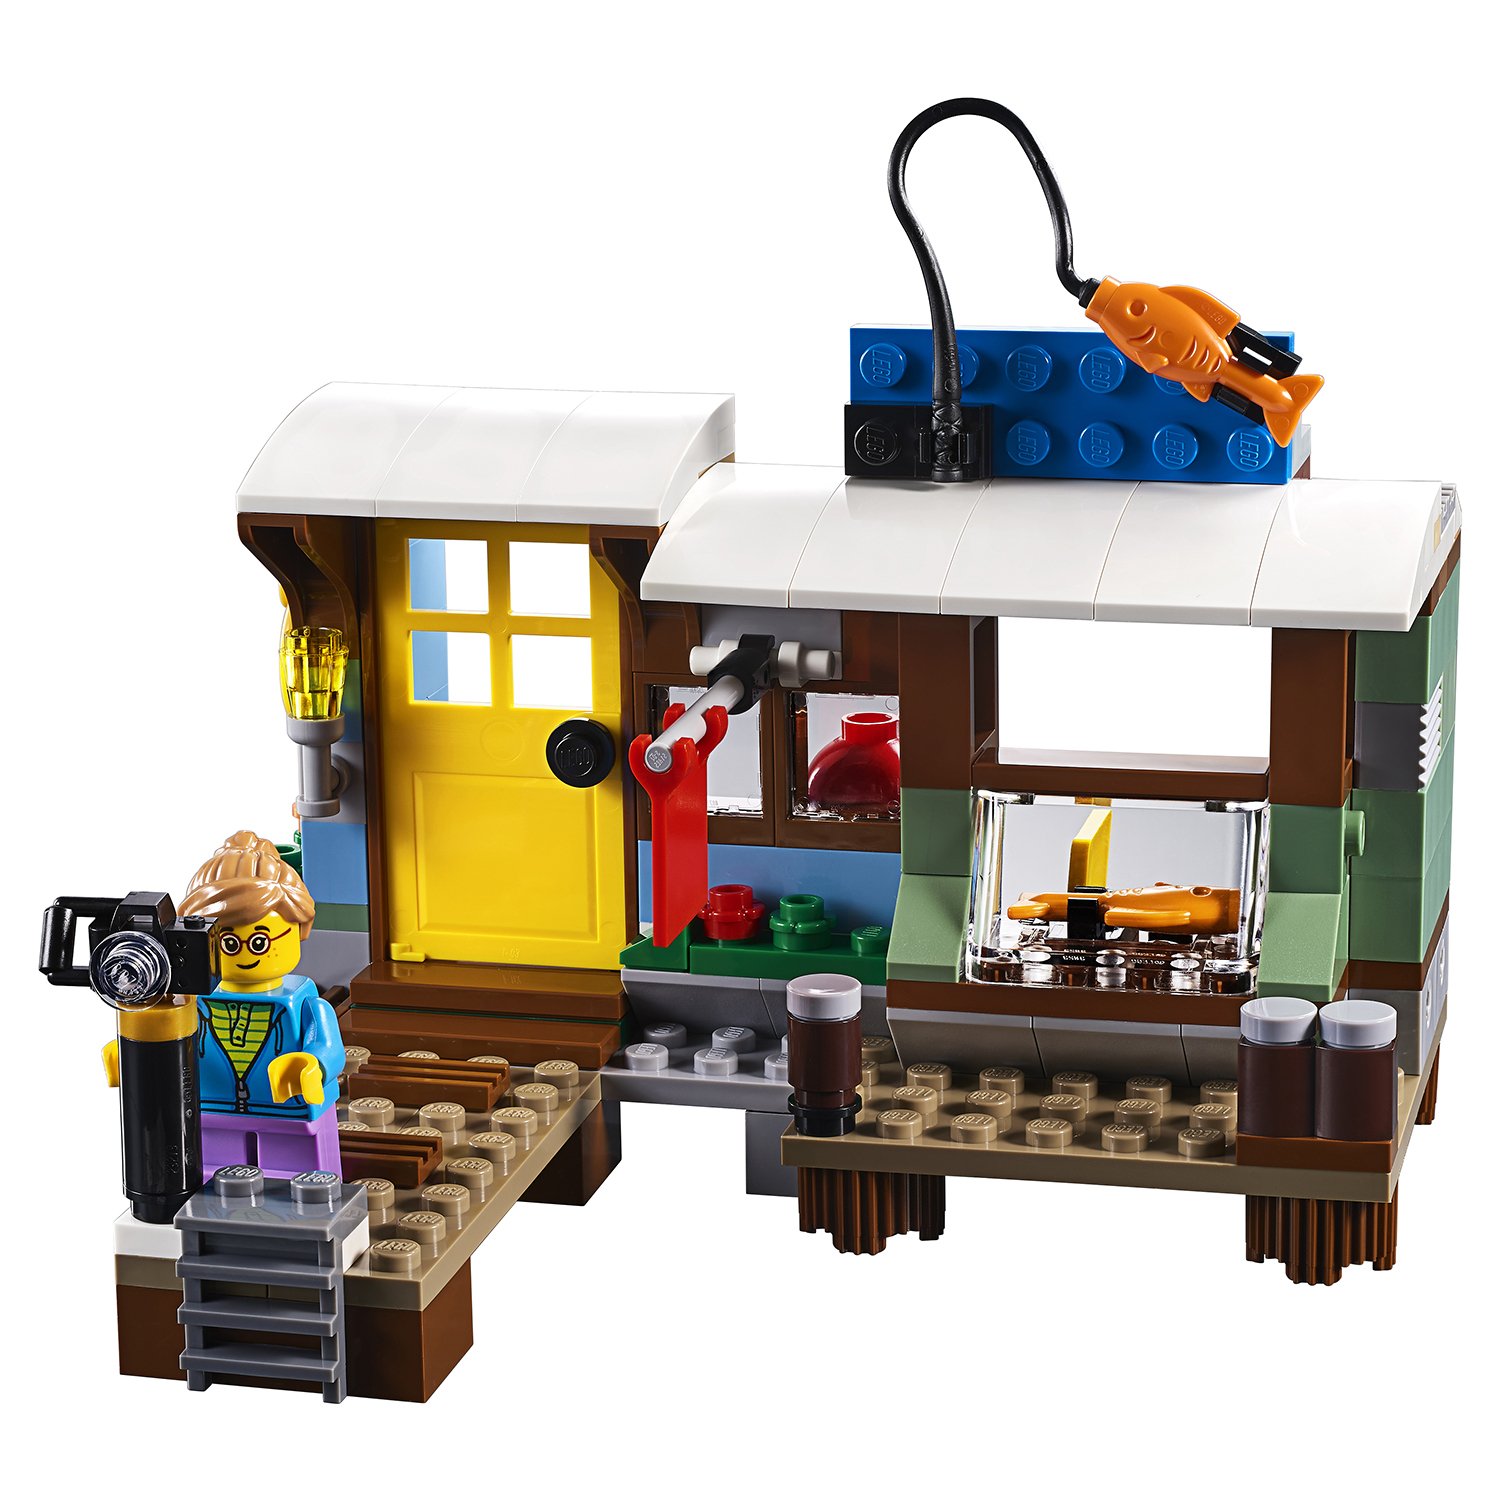 Конструктор LEGO Creator 31093 Плавучий дом